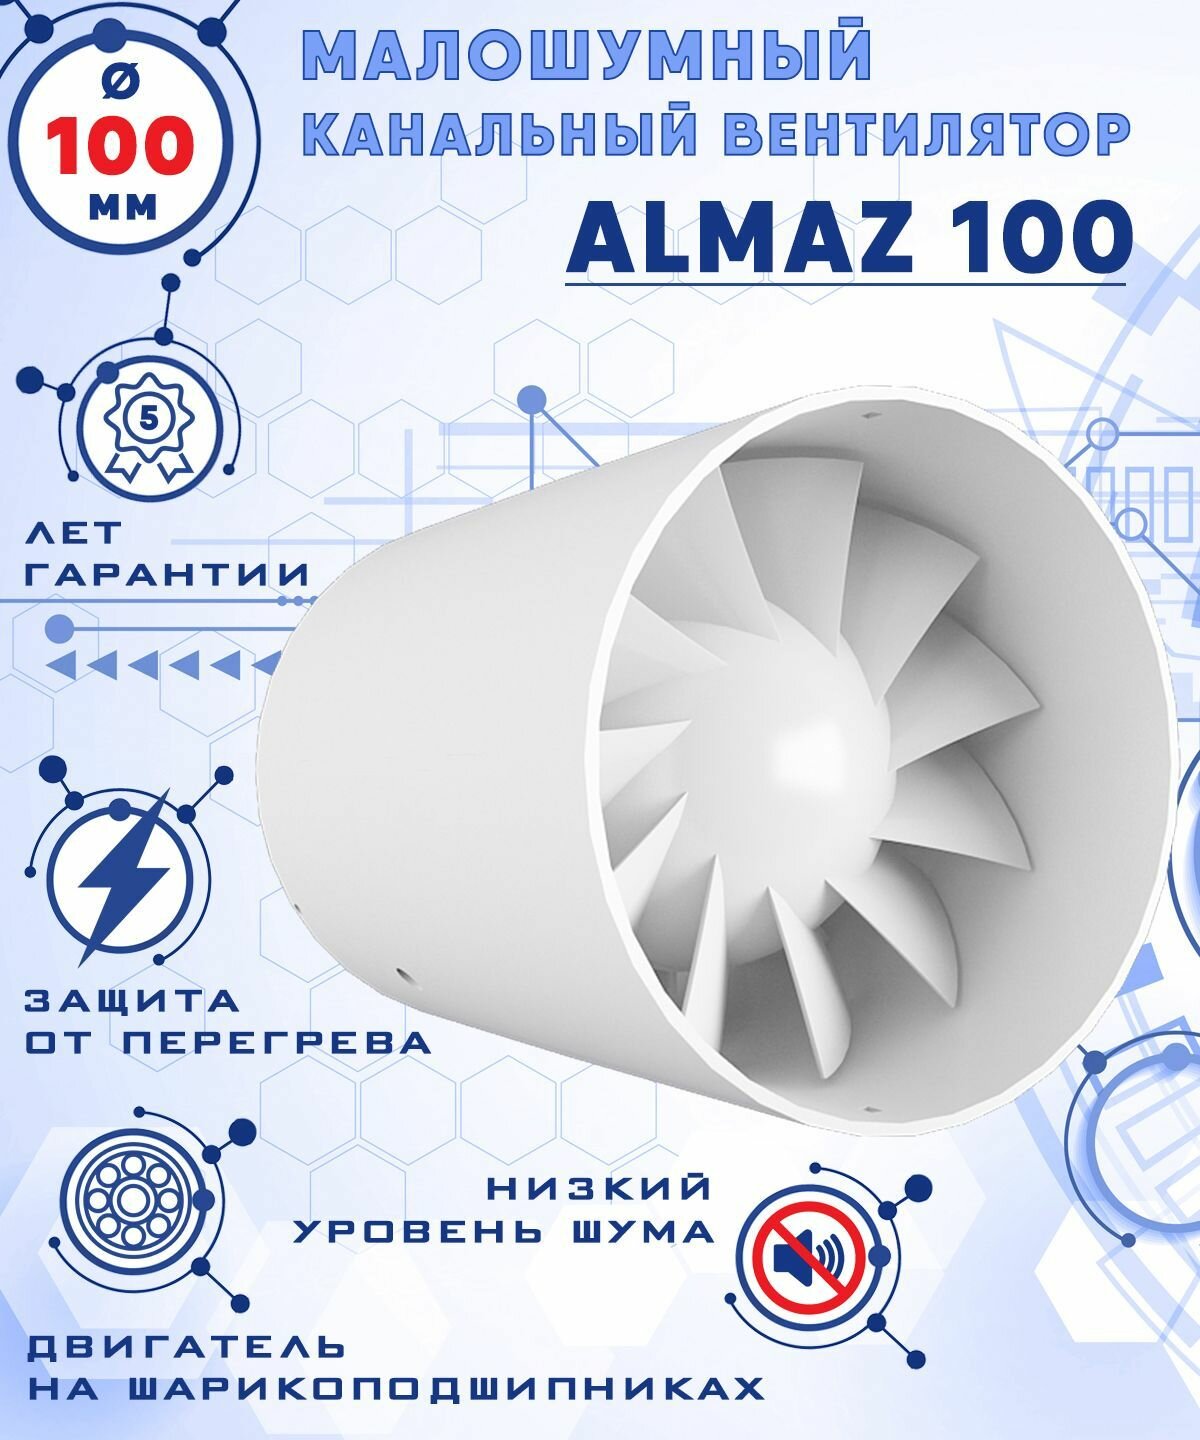 ALMAZ 100 осевой канальный 100 куб.м/ч. малошумный 25 Дб вентилятор на шарикоподшипниках энергоэффективный 8 Вт диаметр 100 мм ZERNBERG